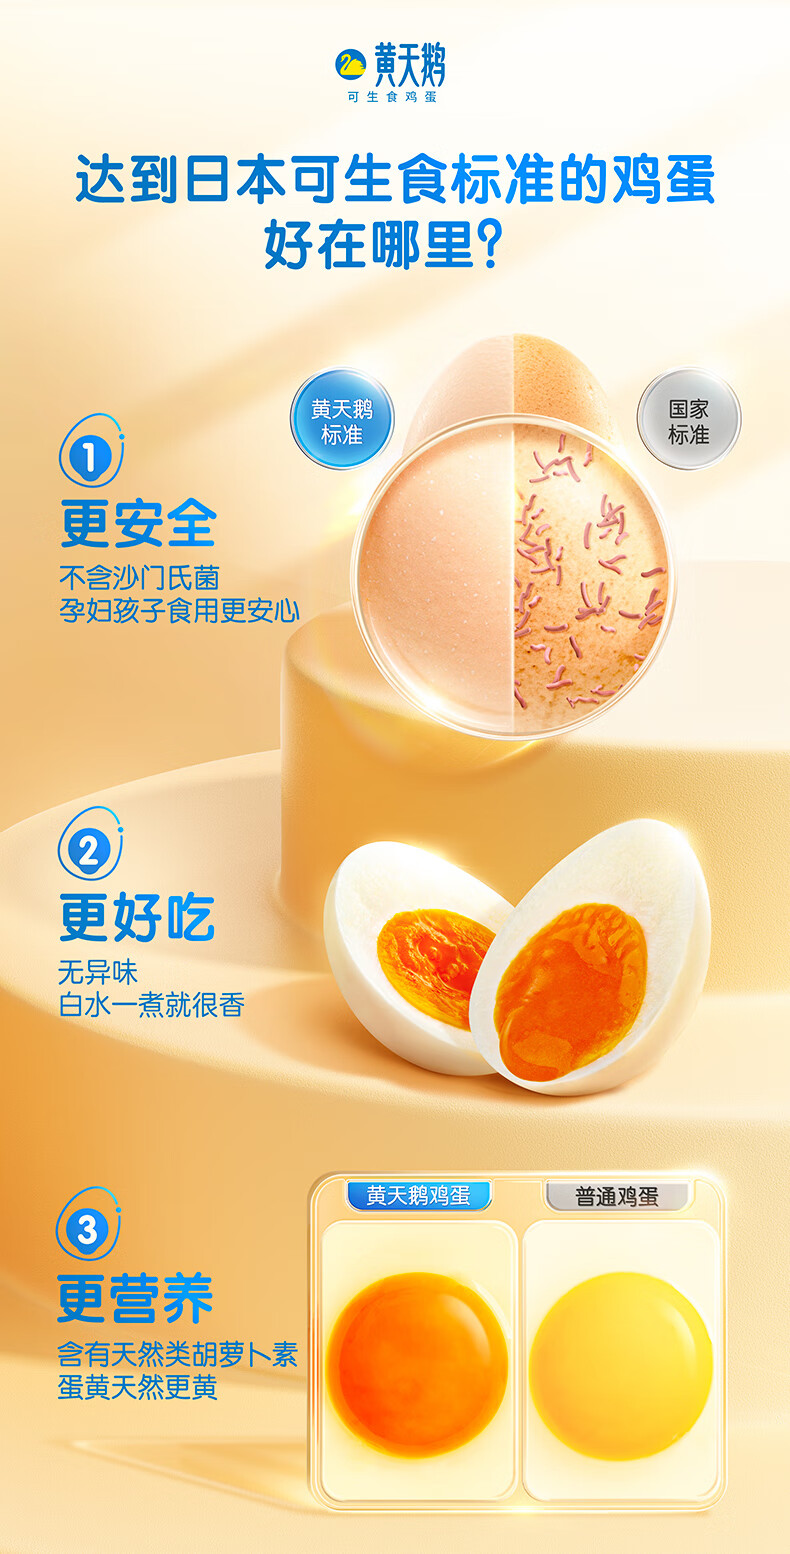 黄天鹅【礼券】鸡蛋30枚X3盒 健康轻食 可生食品质鲜蛋季度套餐 礼盒装